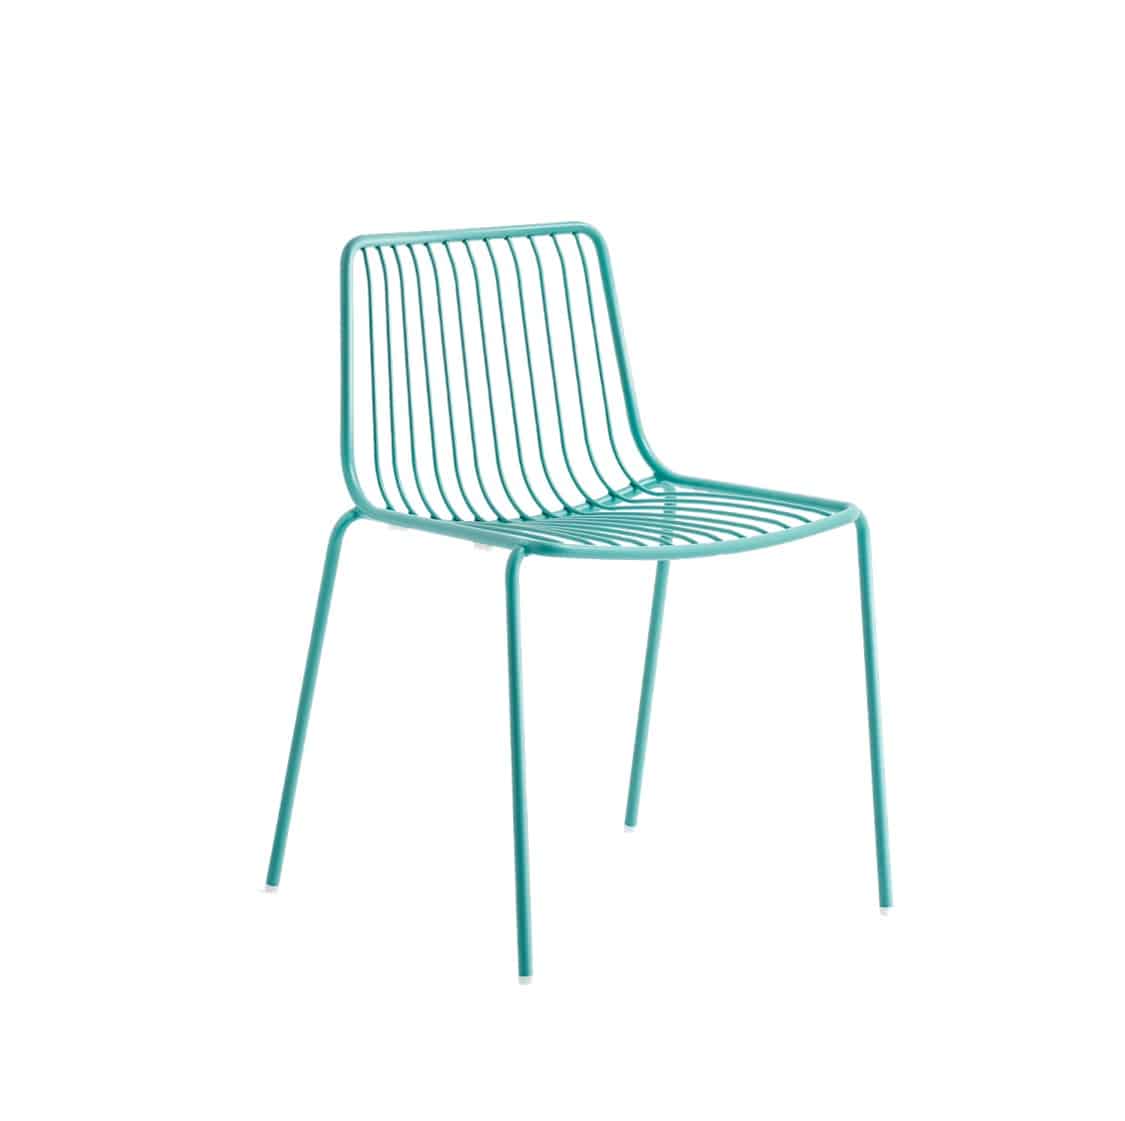 Nolita side chair 3650 Pedrali at DeFrae Contract Furniture Aqua